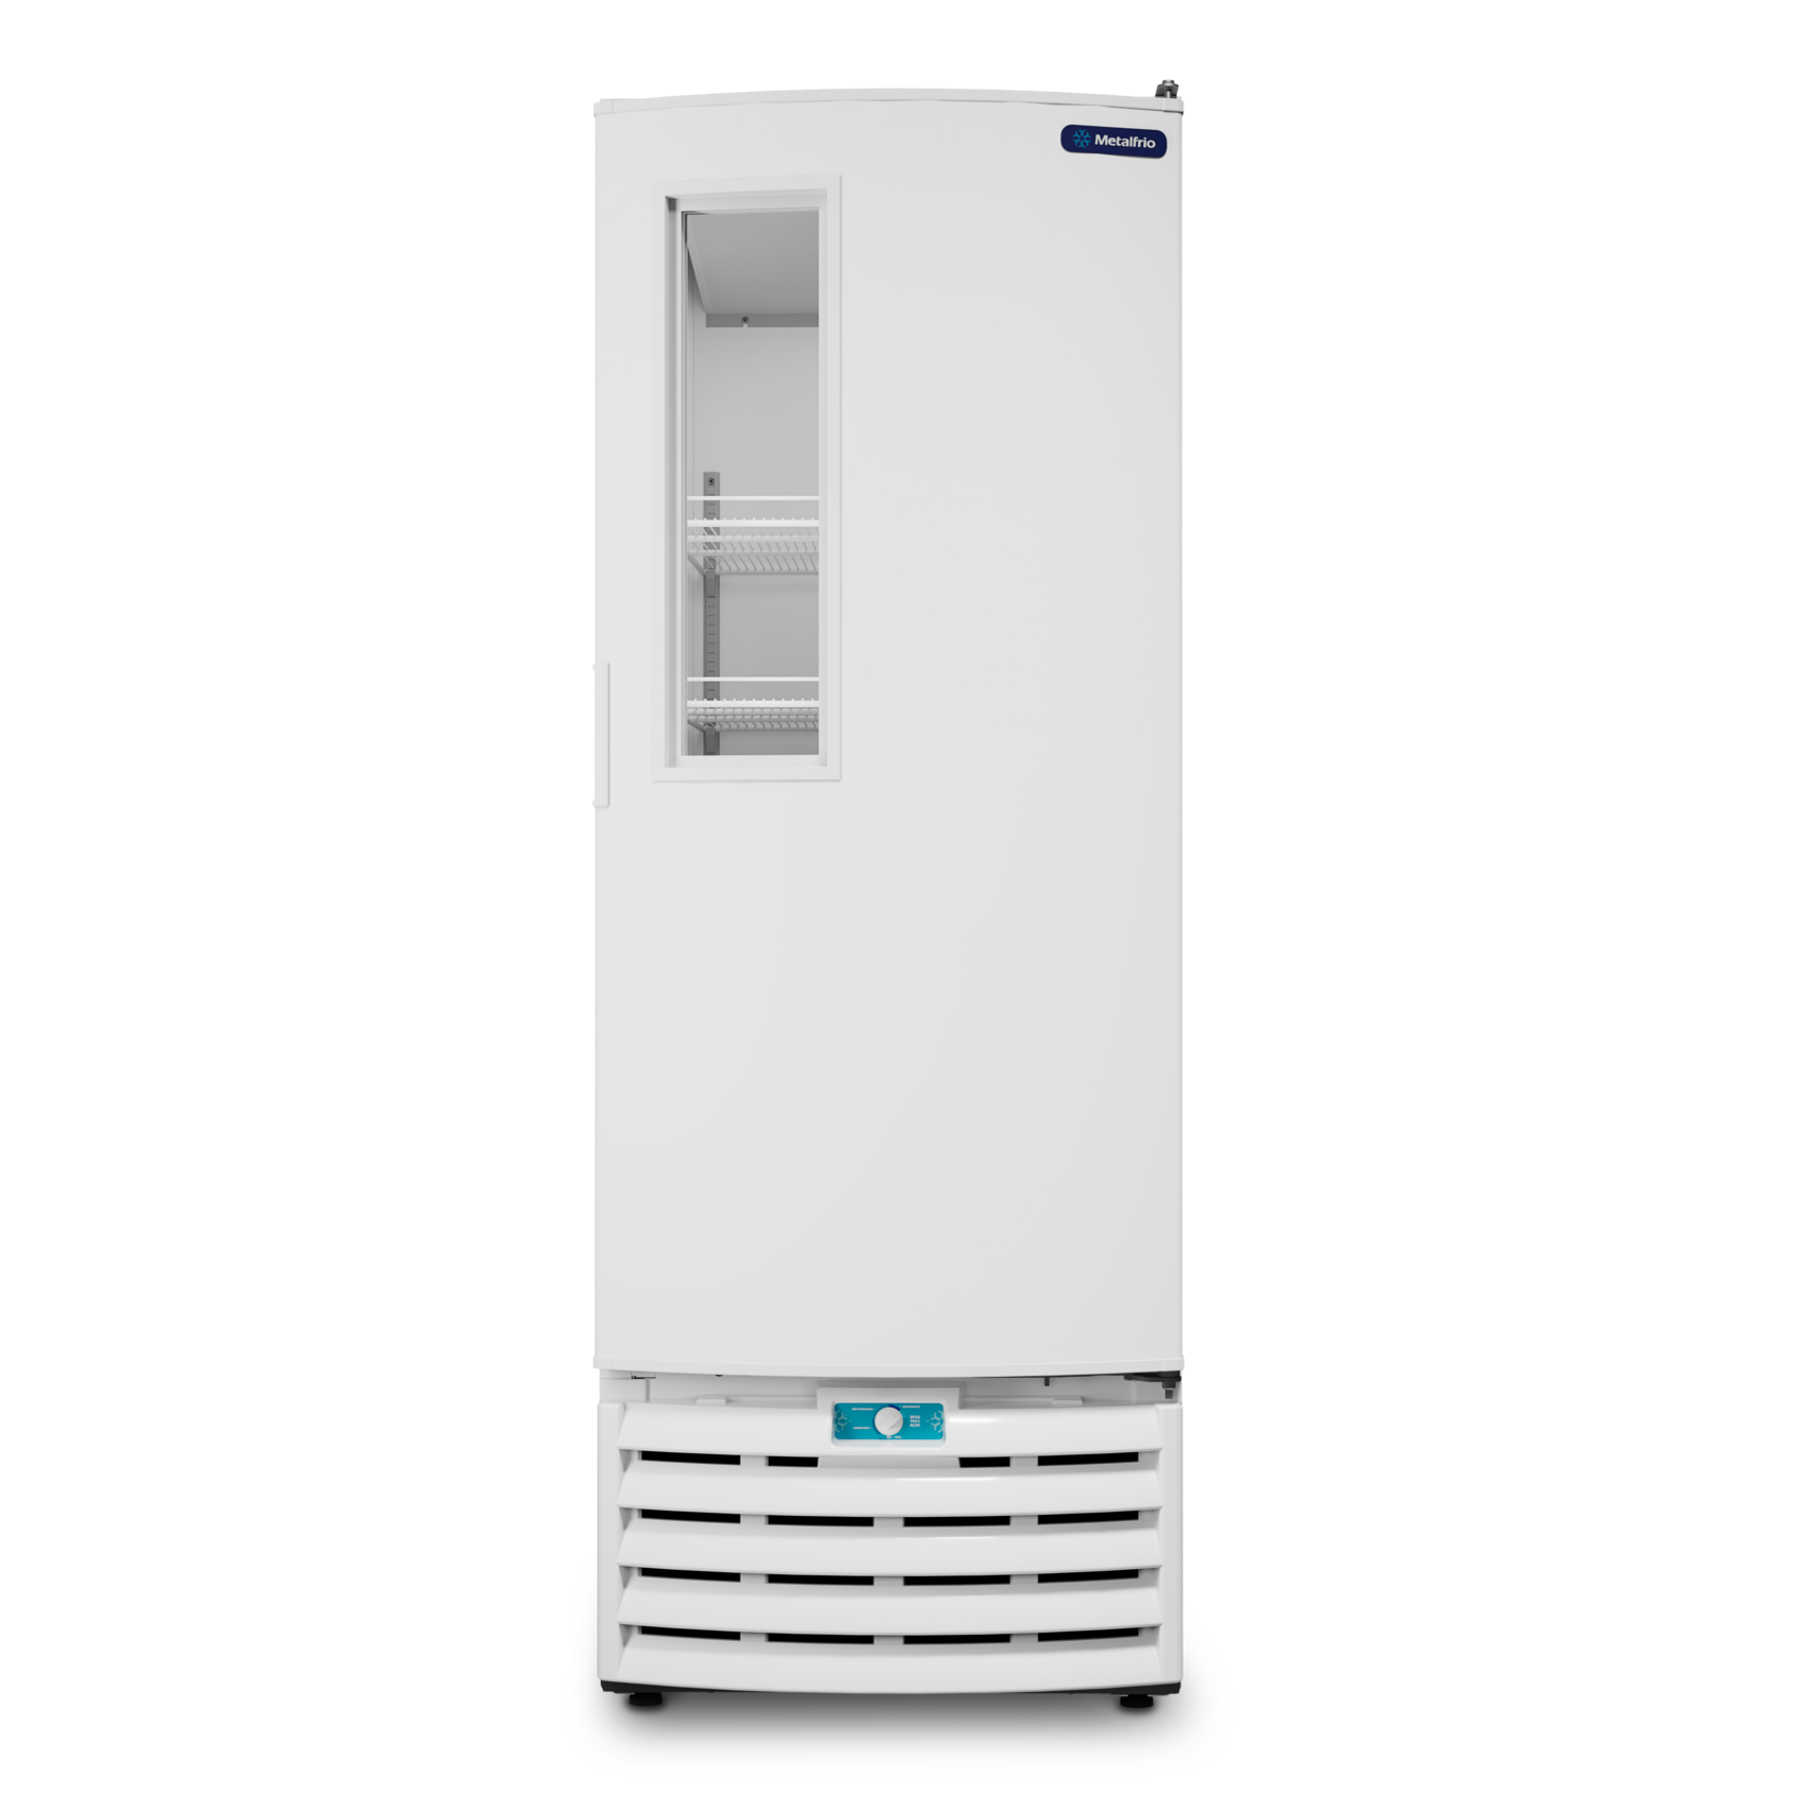 Tripla Ação - Freezer, Conservador e Refrigerador, Porta Visor em um só aparelho